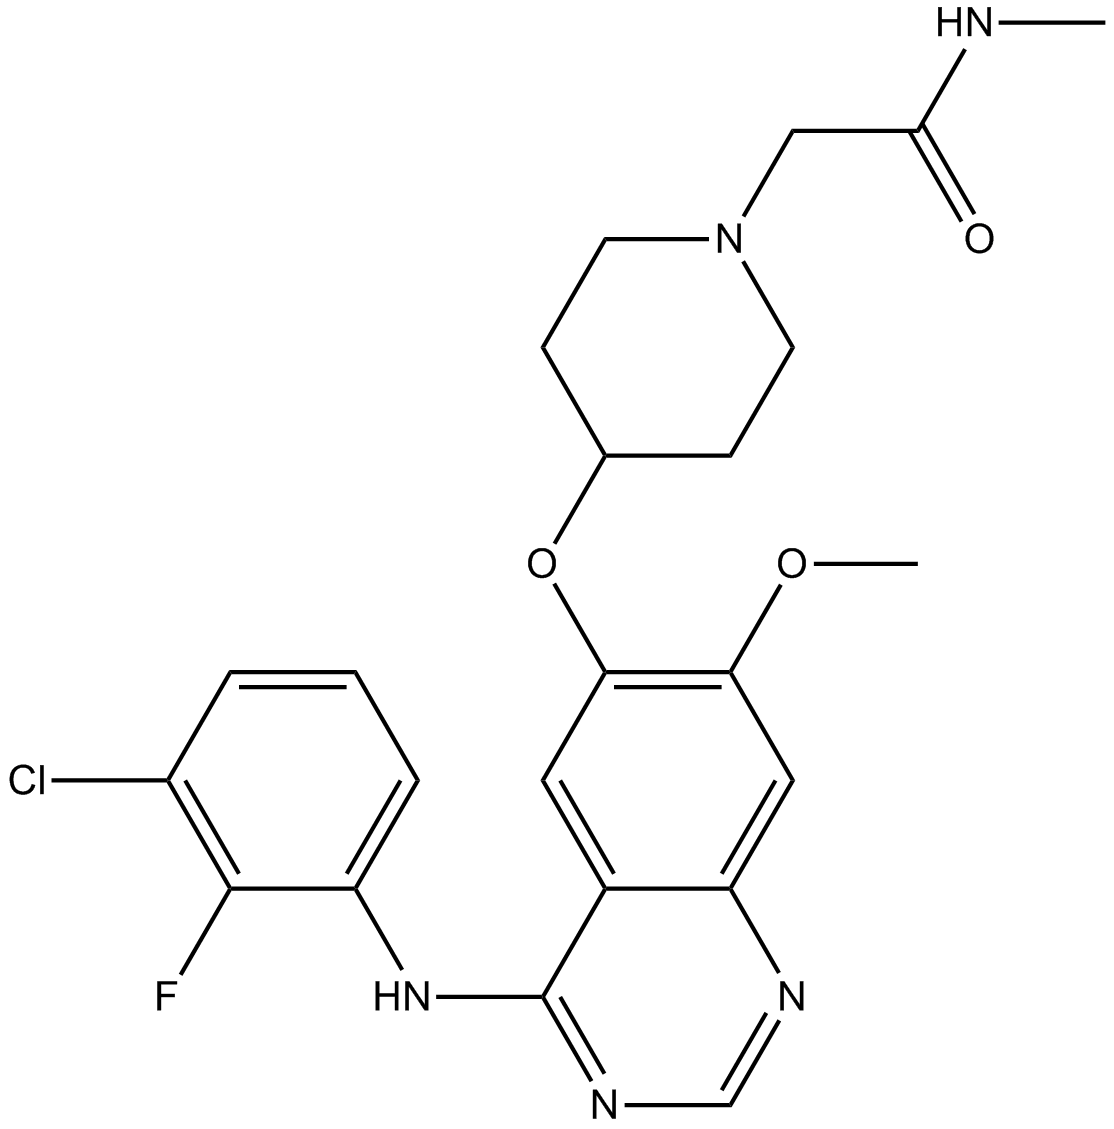 AZD8931 (Sapitinib)